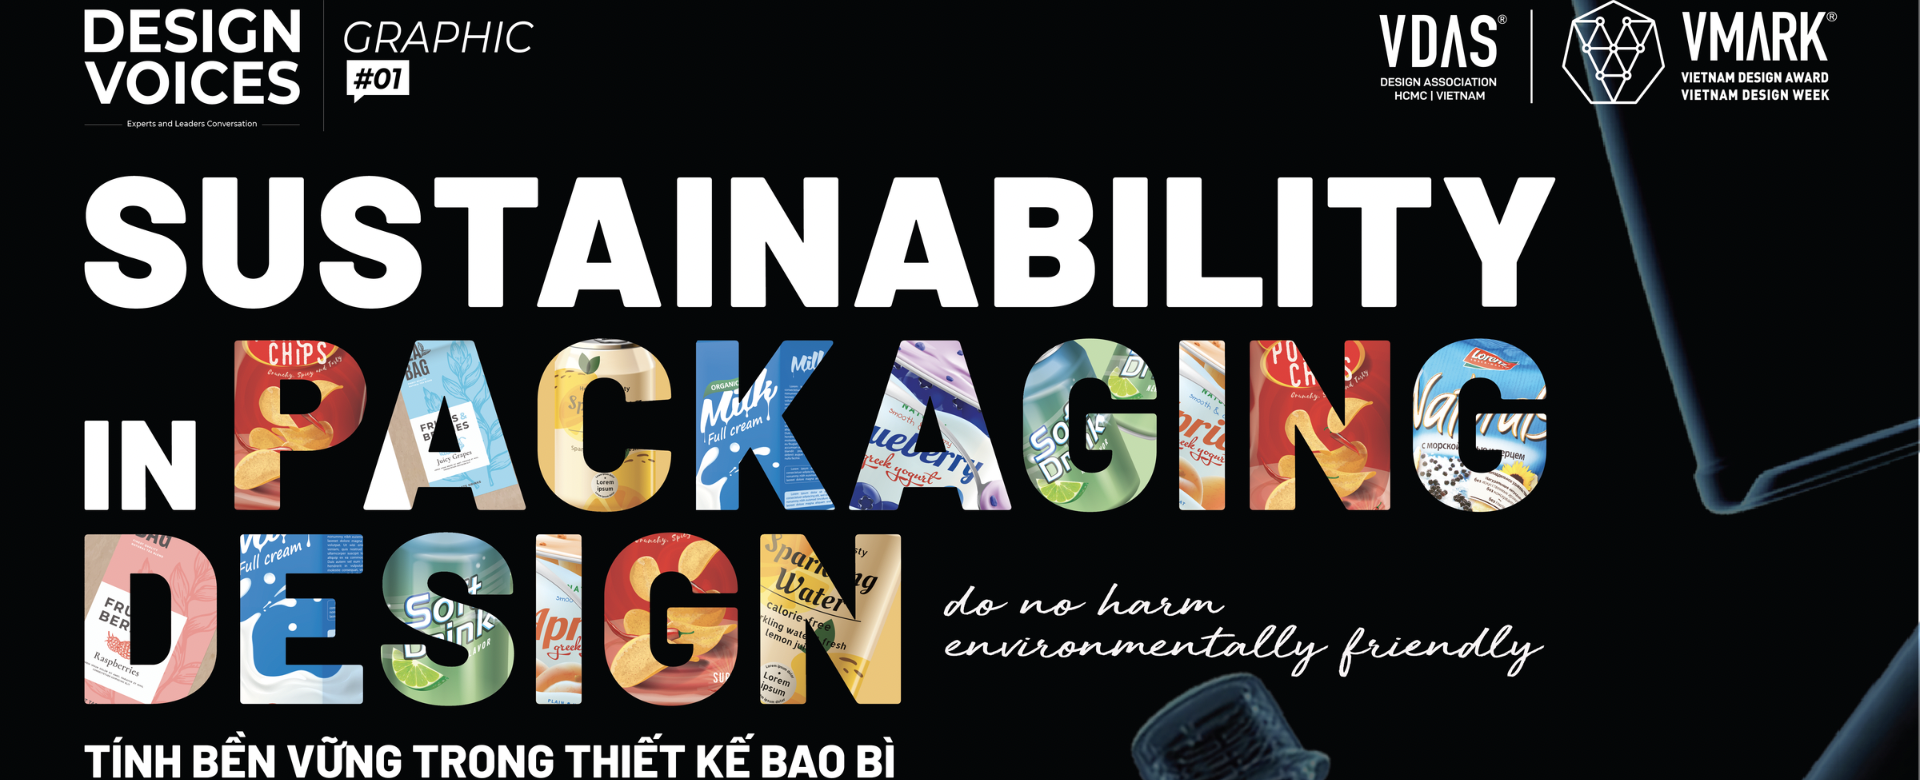 VMARK Design Voices | Graphic quay trở lại với nội dung thiết kế bao bì sáng tạo, bền vững